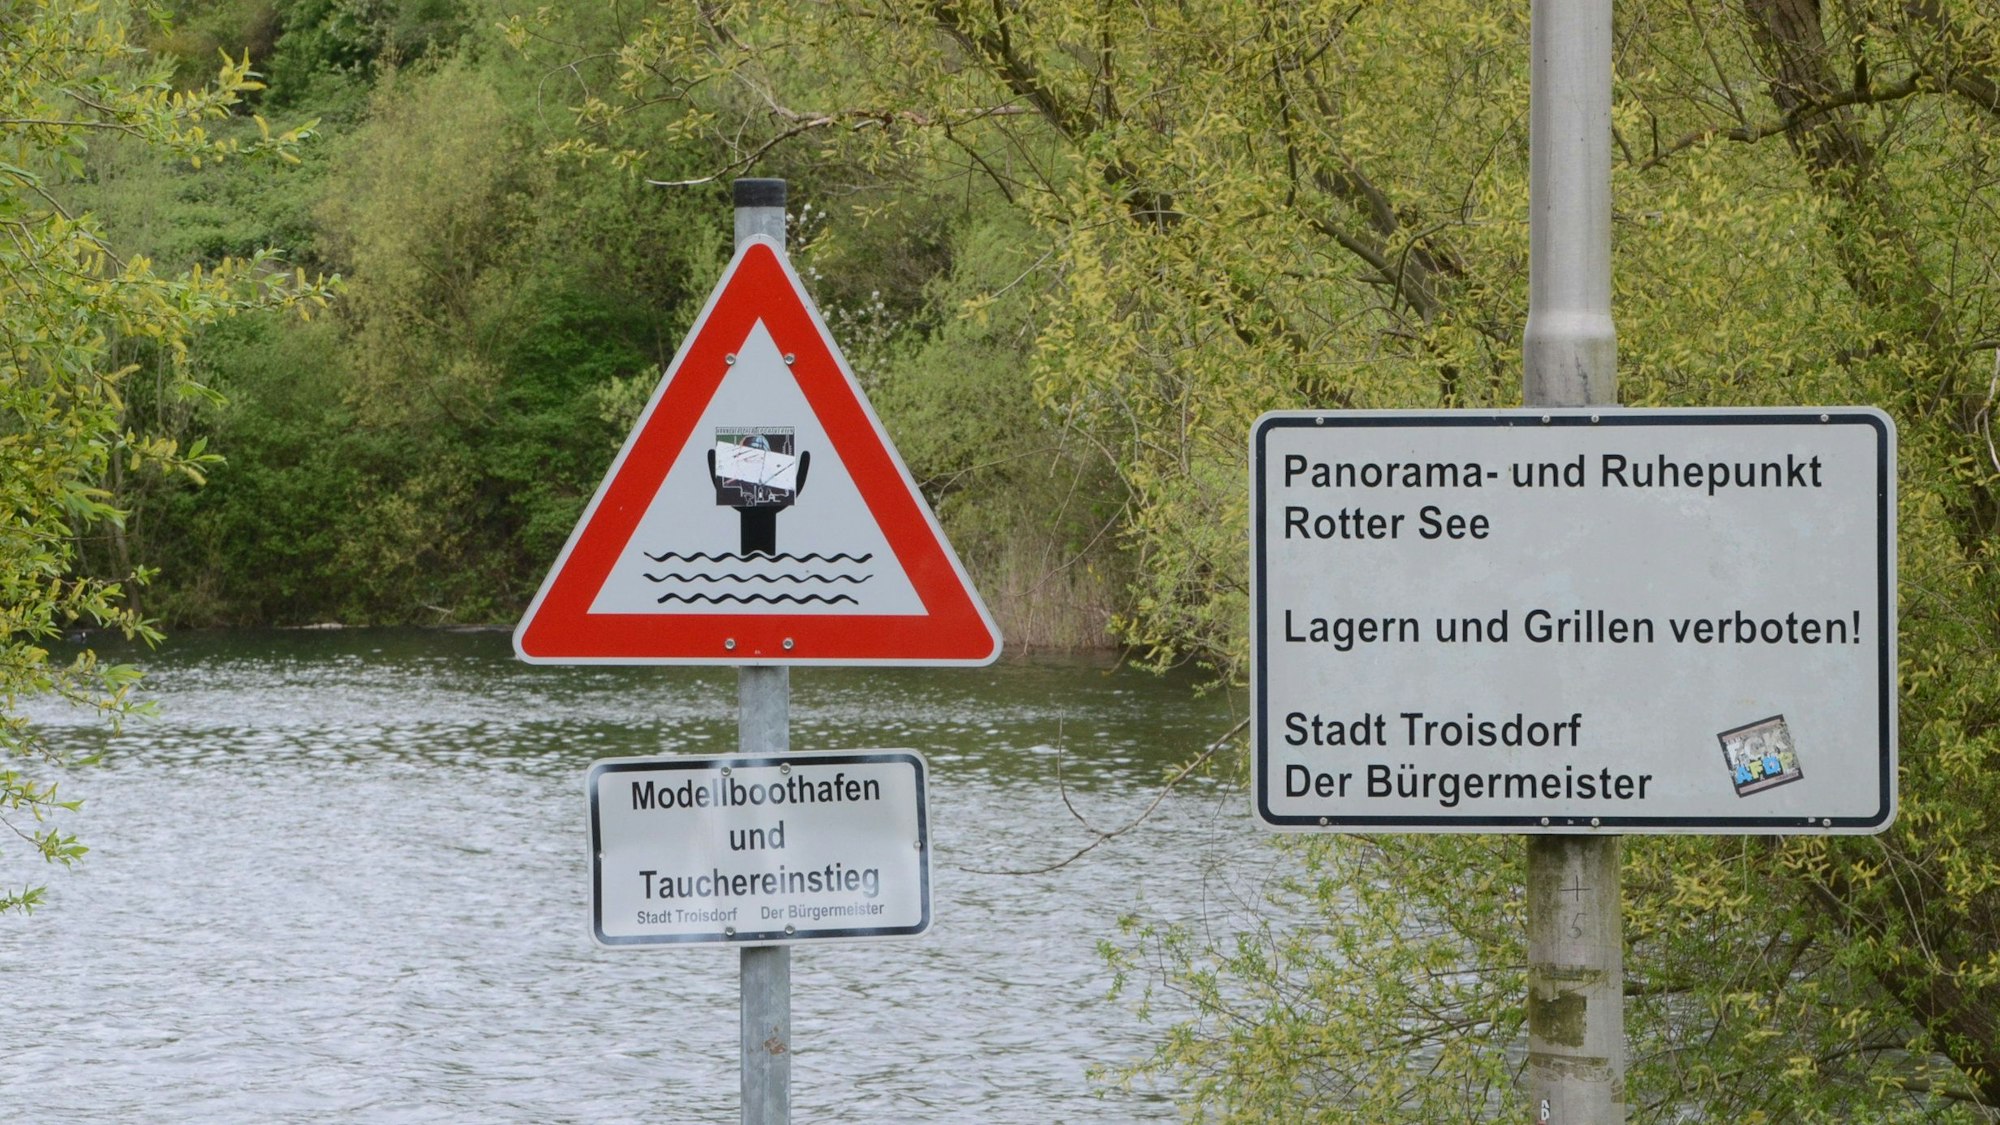 Schilder an einem Seeufer. „Panorama- und Ruhepunkt Rotter See“ ist zu lesen, außerdem „Lagern und Grillen verboten“. Ein anderes Schild weist das Gelände als Tauchereinstieg und Modellboothafen aus.